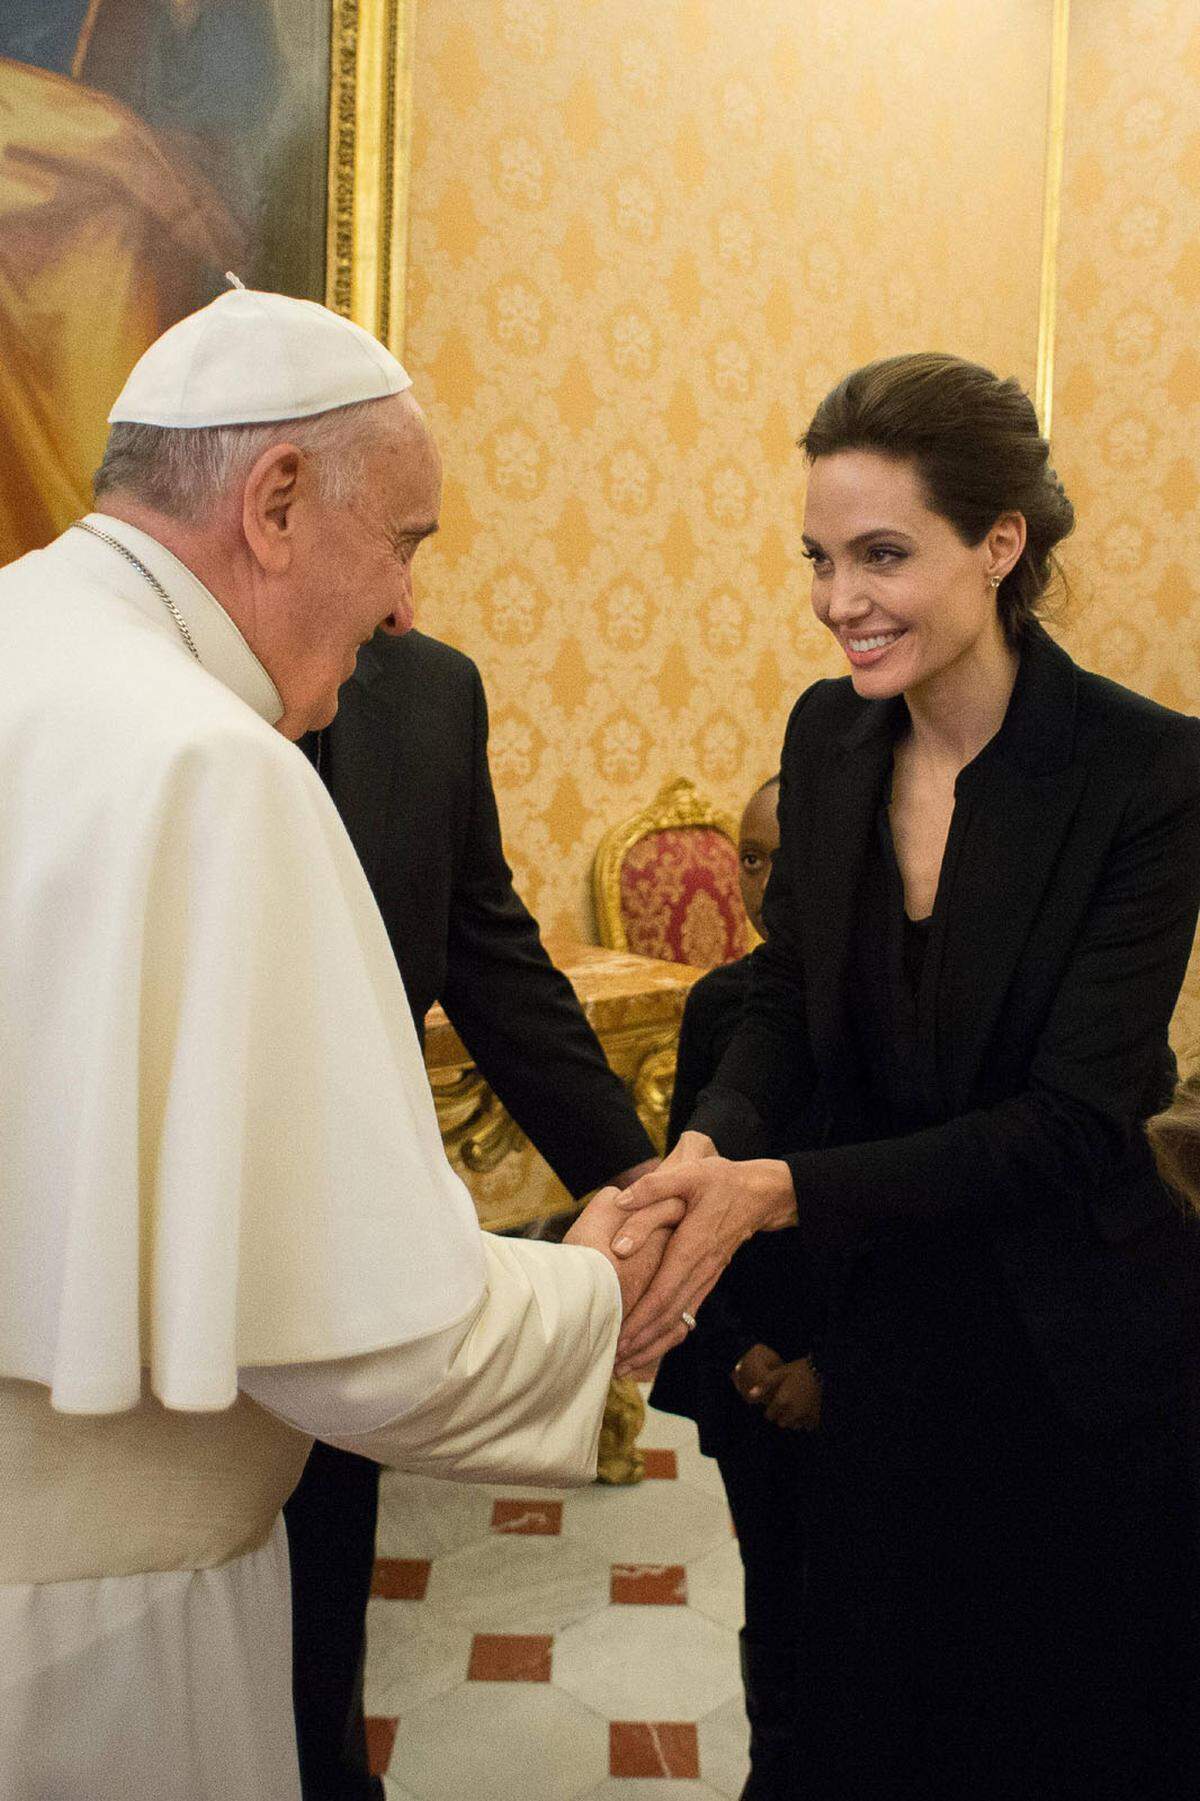 Genauso wie Hollywoodstar Angelina Jolie, die ein schwarzes Outfit ohne Kopfbedeckung trug.